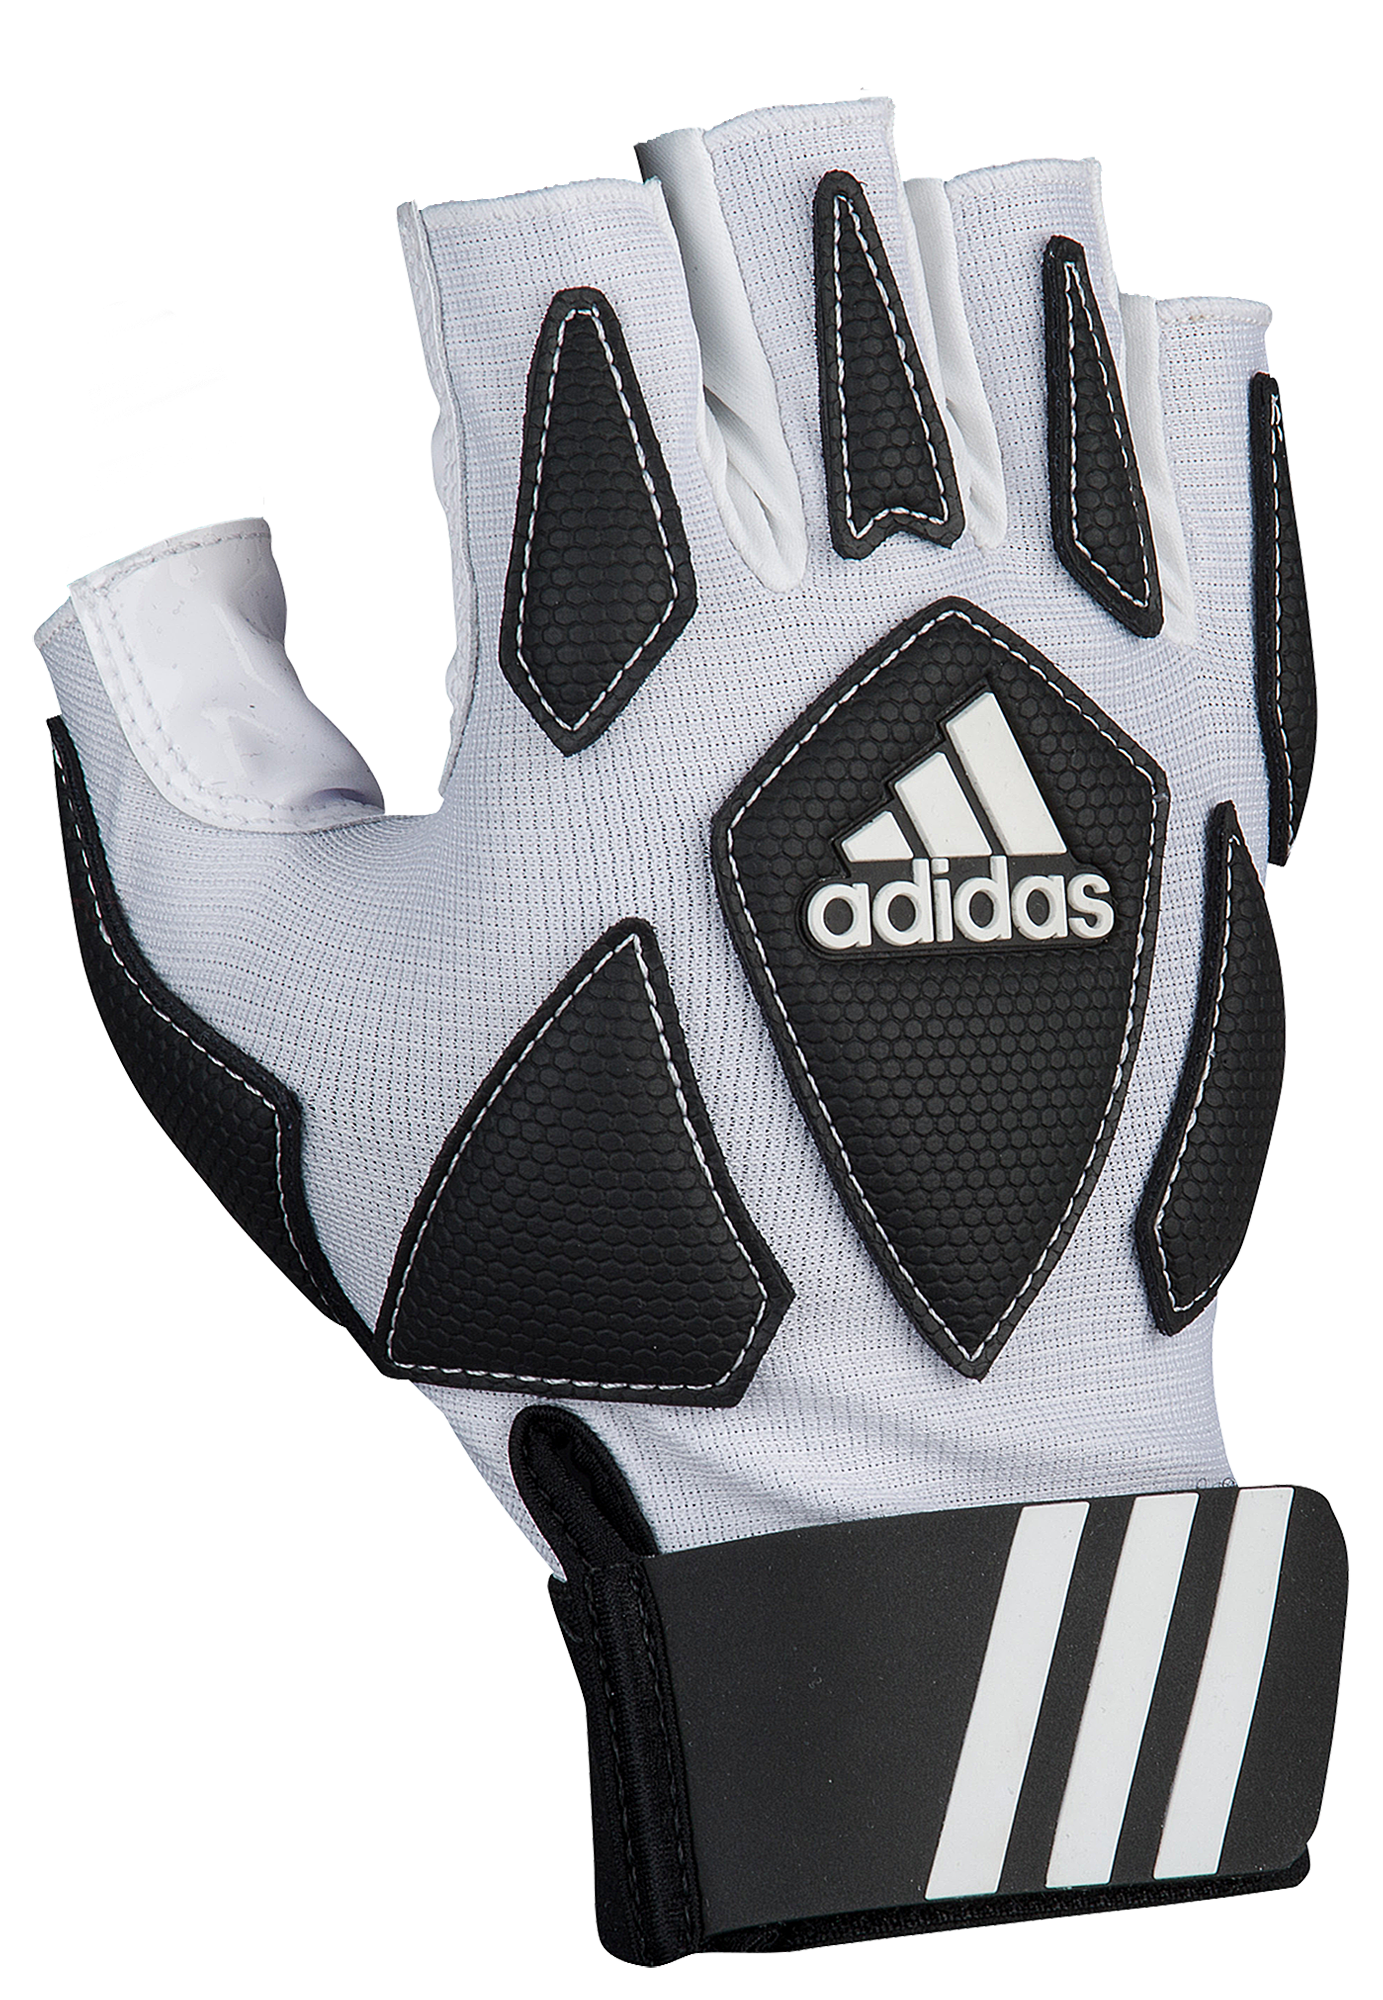 eastbay adidas football gloves